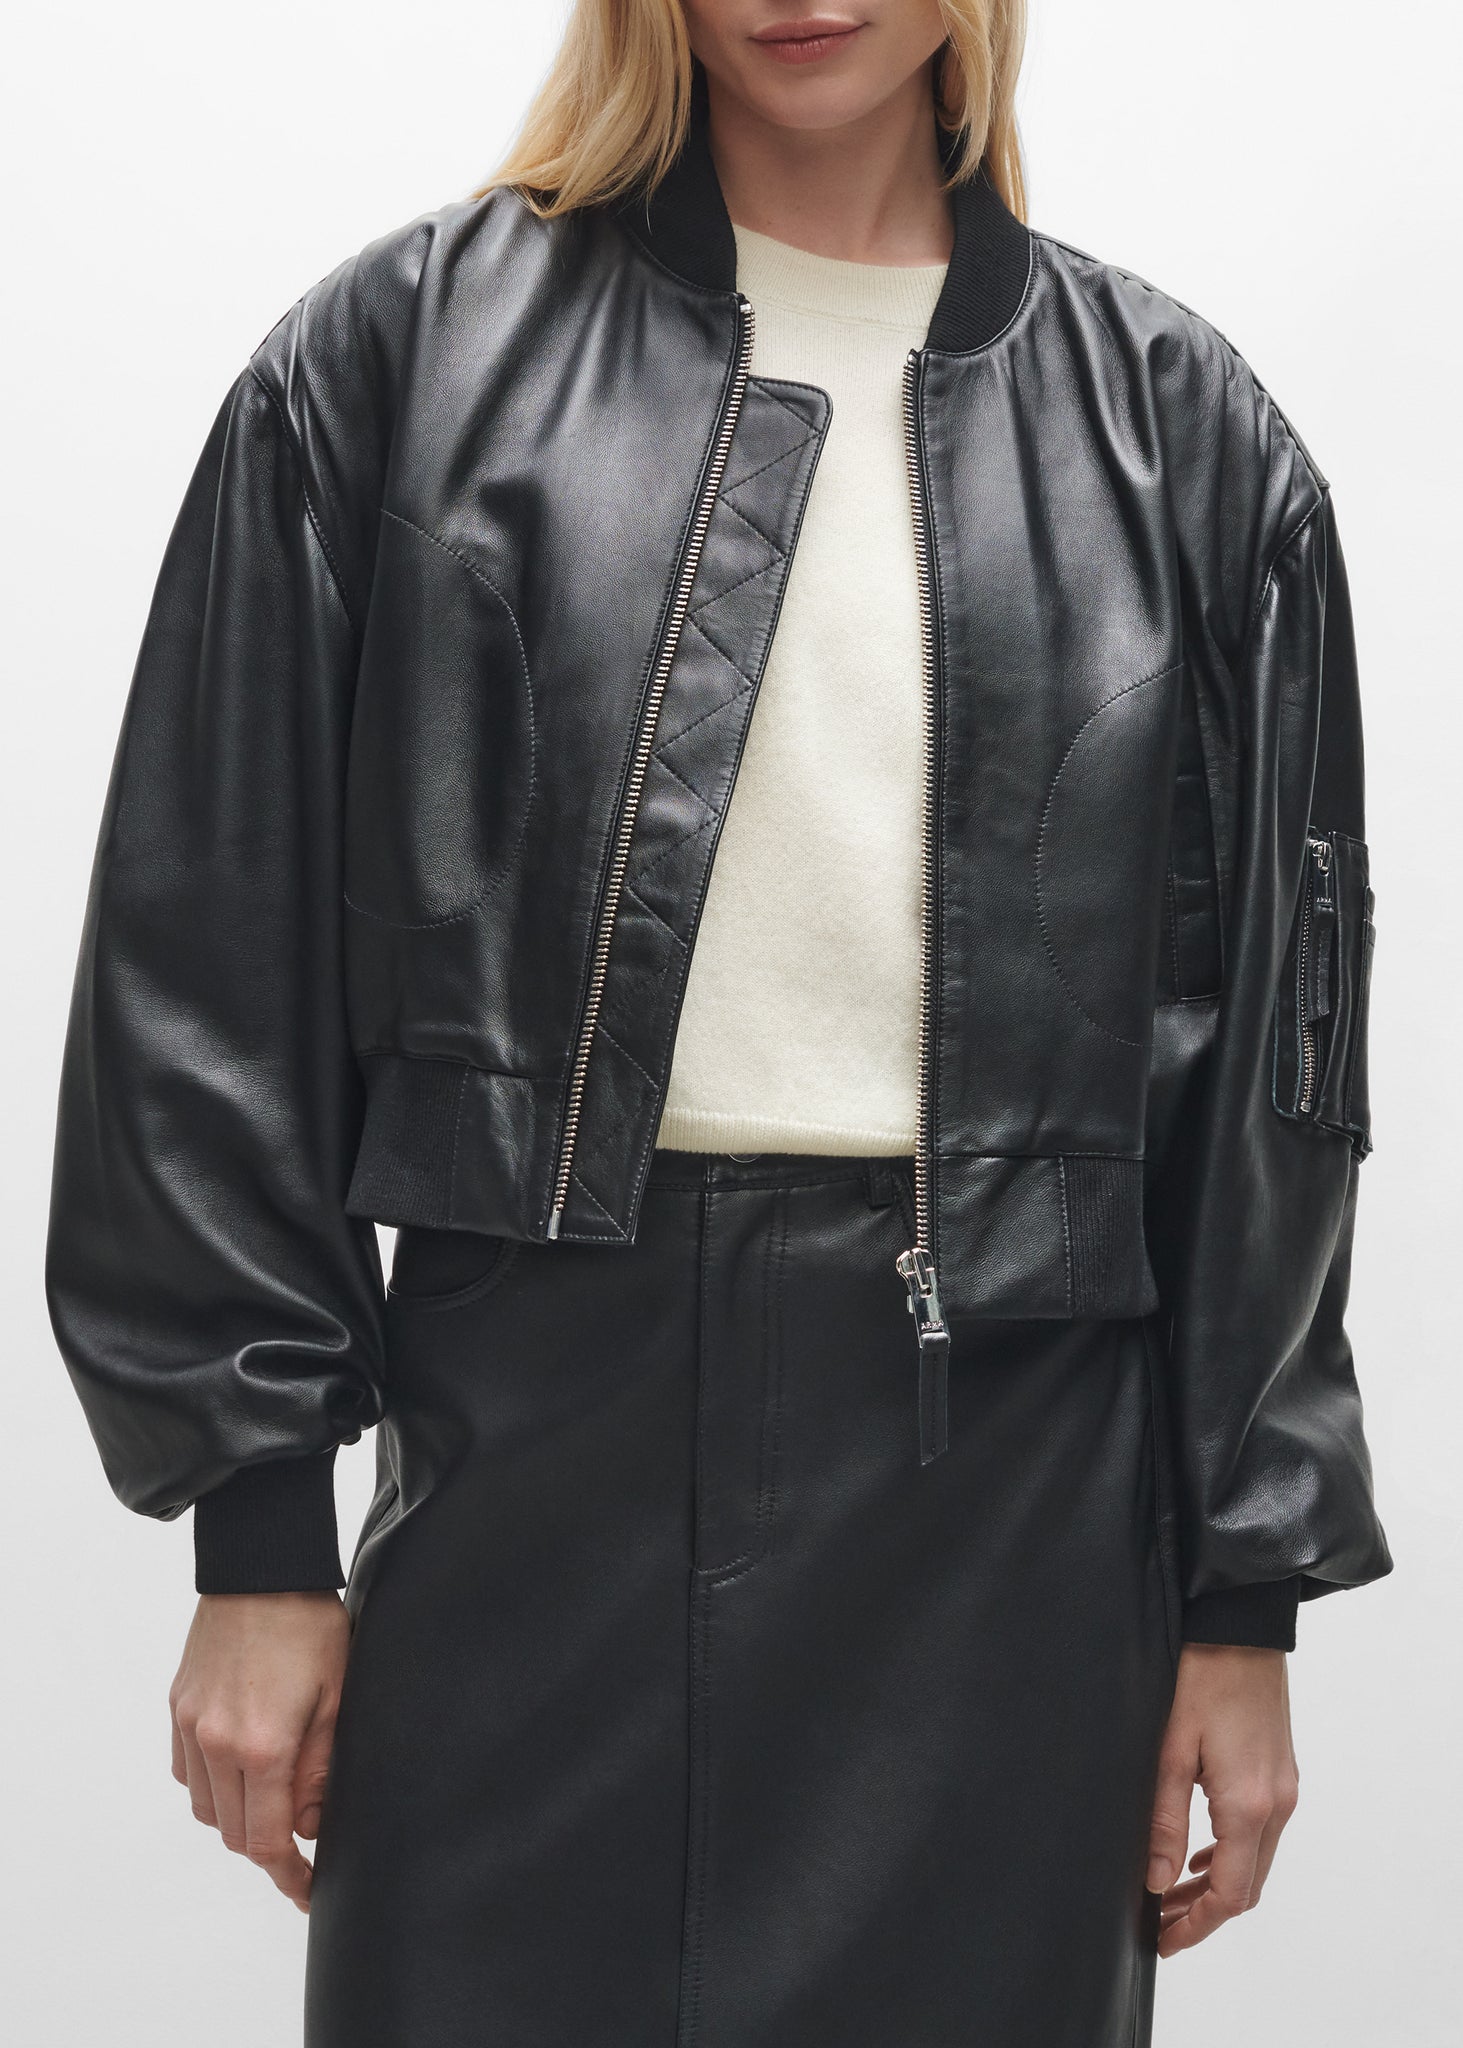 SALINAS | Leather Bomber Jacket